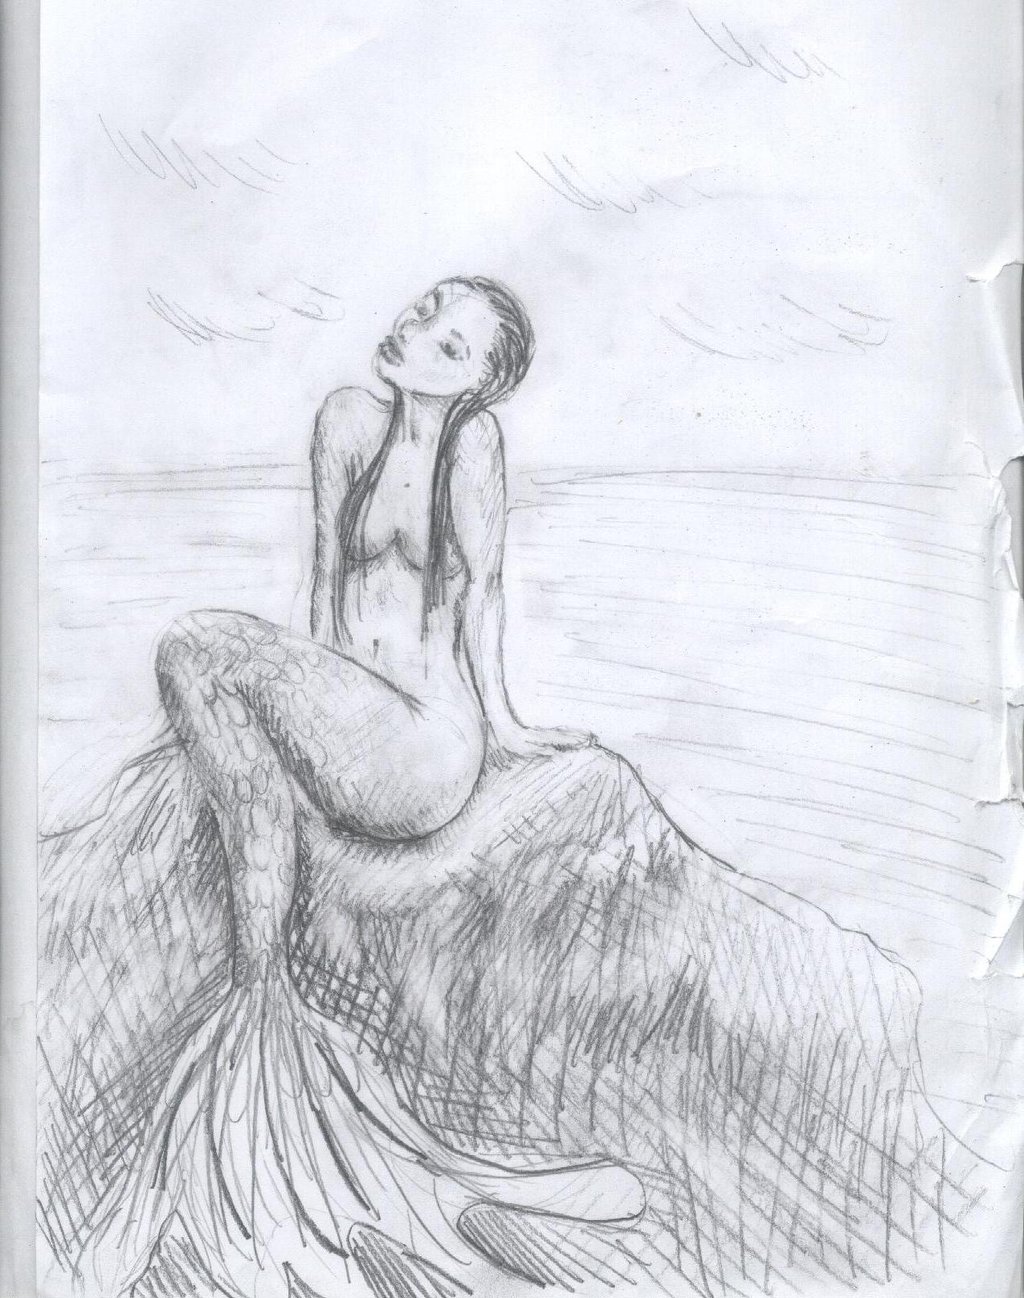 Pictures Of Drawings Of Mermaids On Rocks - Mermaid Sitting On A Ro...